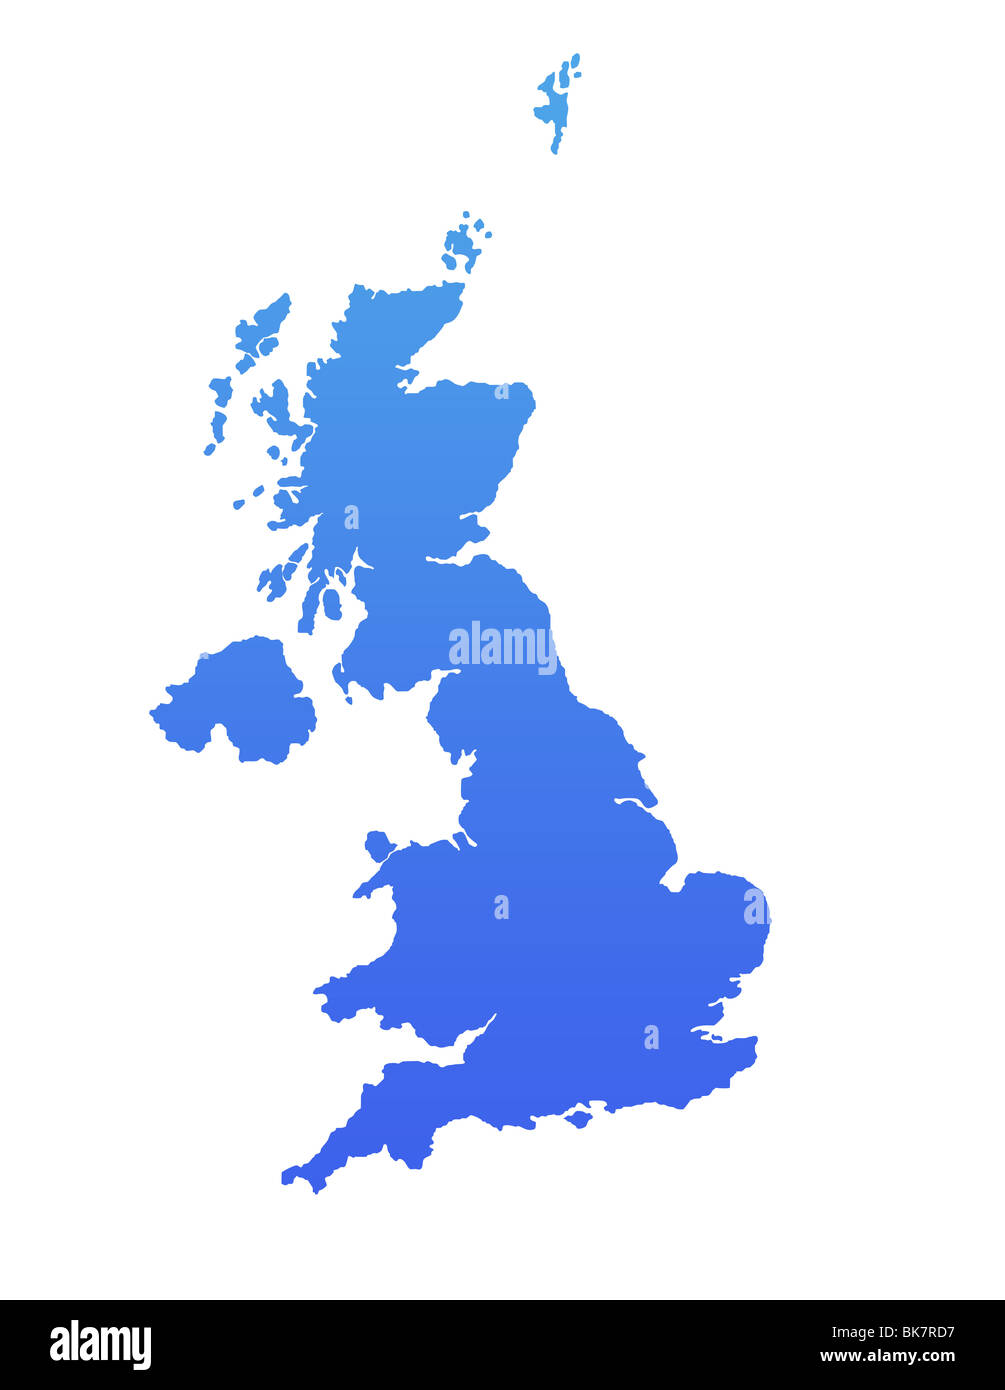 L'Angleterre ou Royaume-uni carte en bleu dégradé, isolé sur fond blanc. Banque D'Images